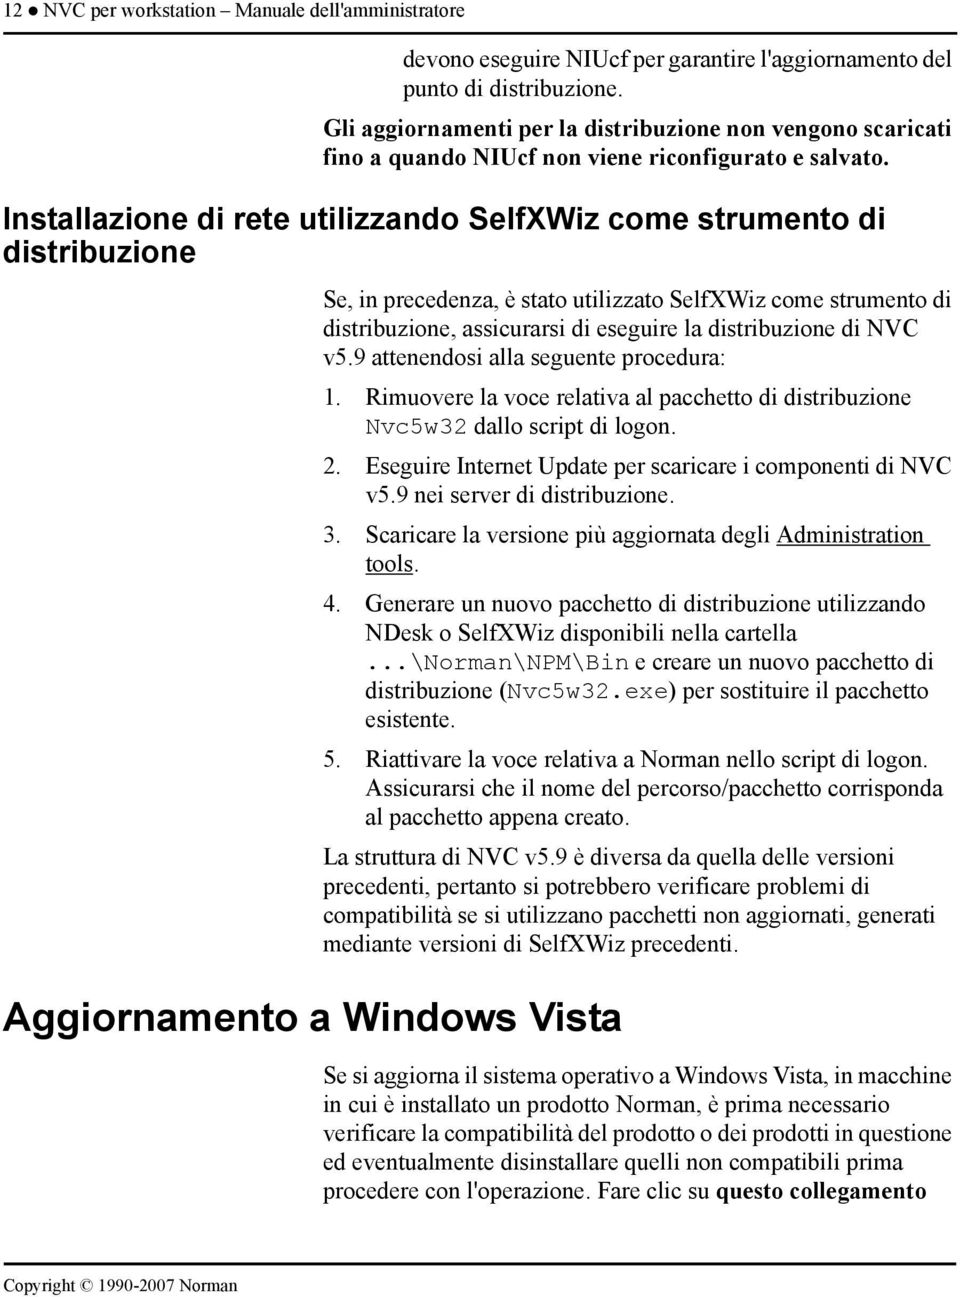 Installazione di rete utilizzando SelfXWiz come strumento di distribuzione Aggiornamento a Windows Vista Se, in precedenza, è stato utilizzato SelfXWiz come strumento di distribuzione, assicurarsi di